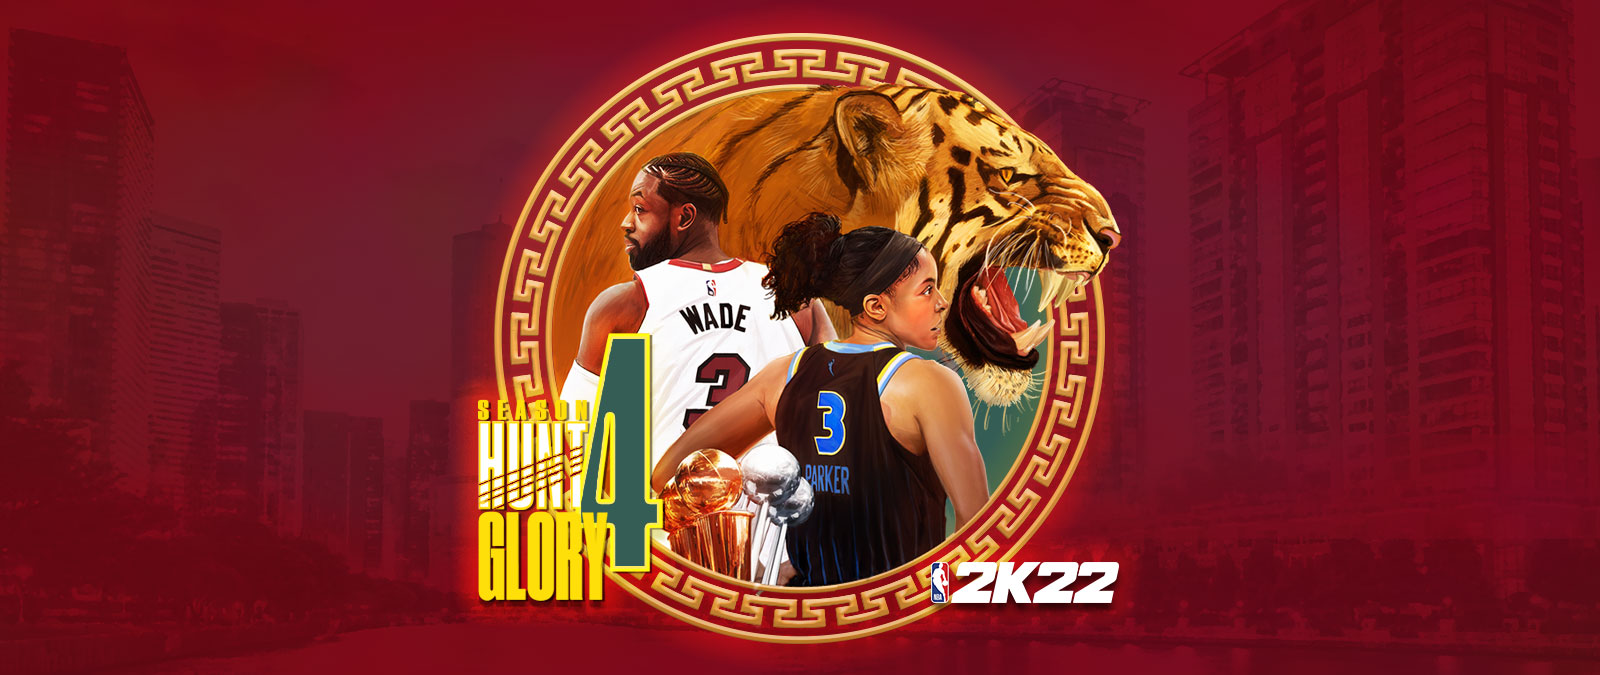 《NBA 2K22》第 4 季：Hunt 4 Glory，一個圓形的圖形元素覆蓋在紅色的城市景觀上，描繪了一隻咆哮的老虎以及 Dwayne Wade 和 Candace Parker 的背影。 